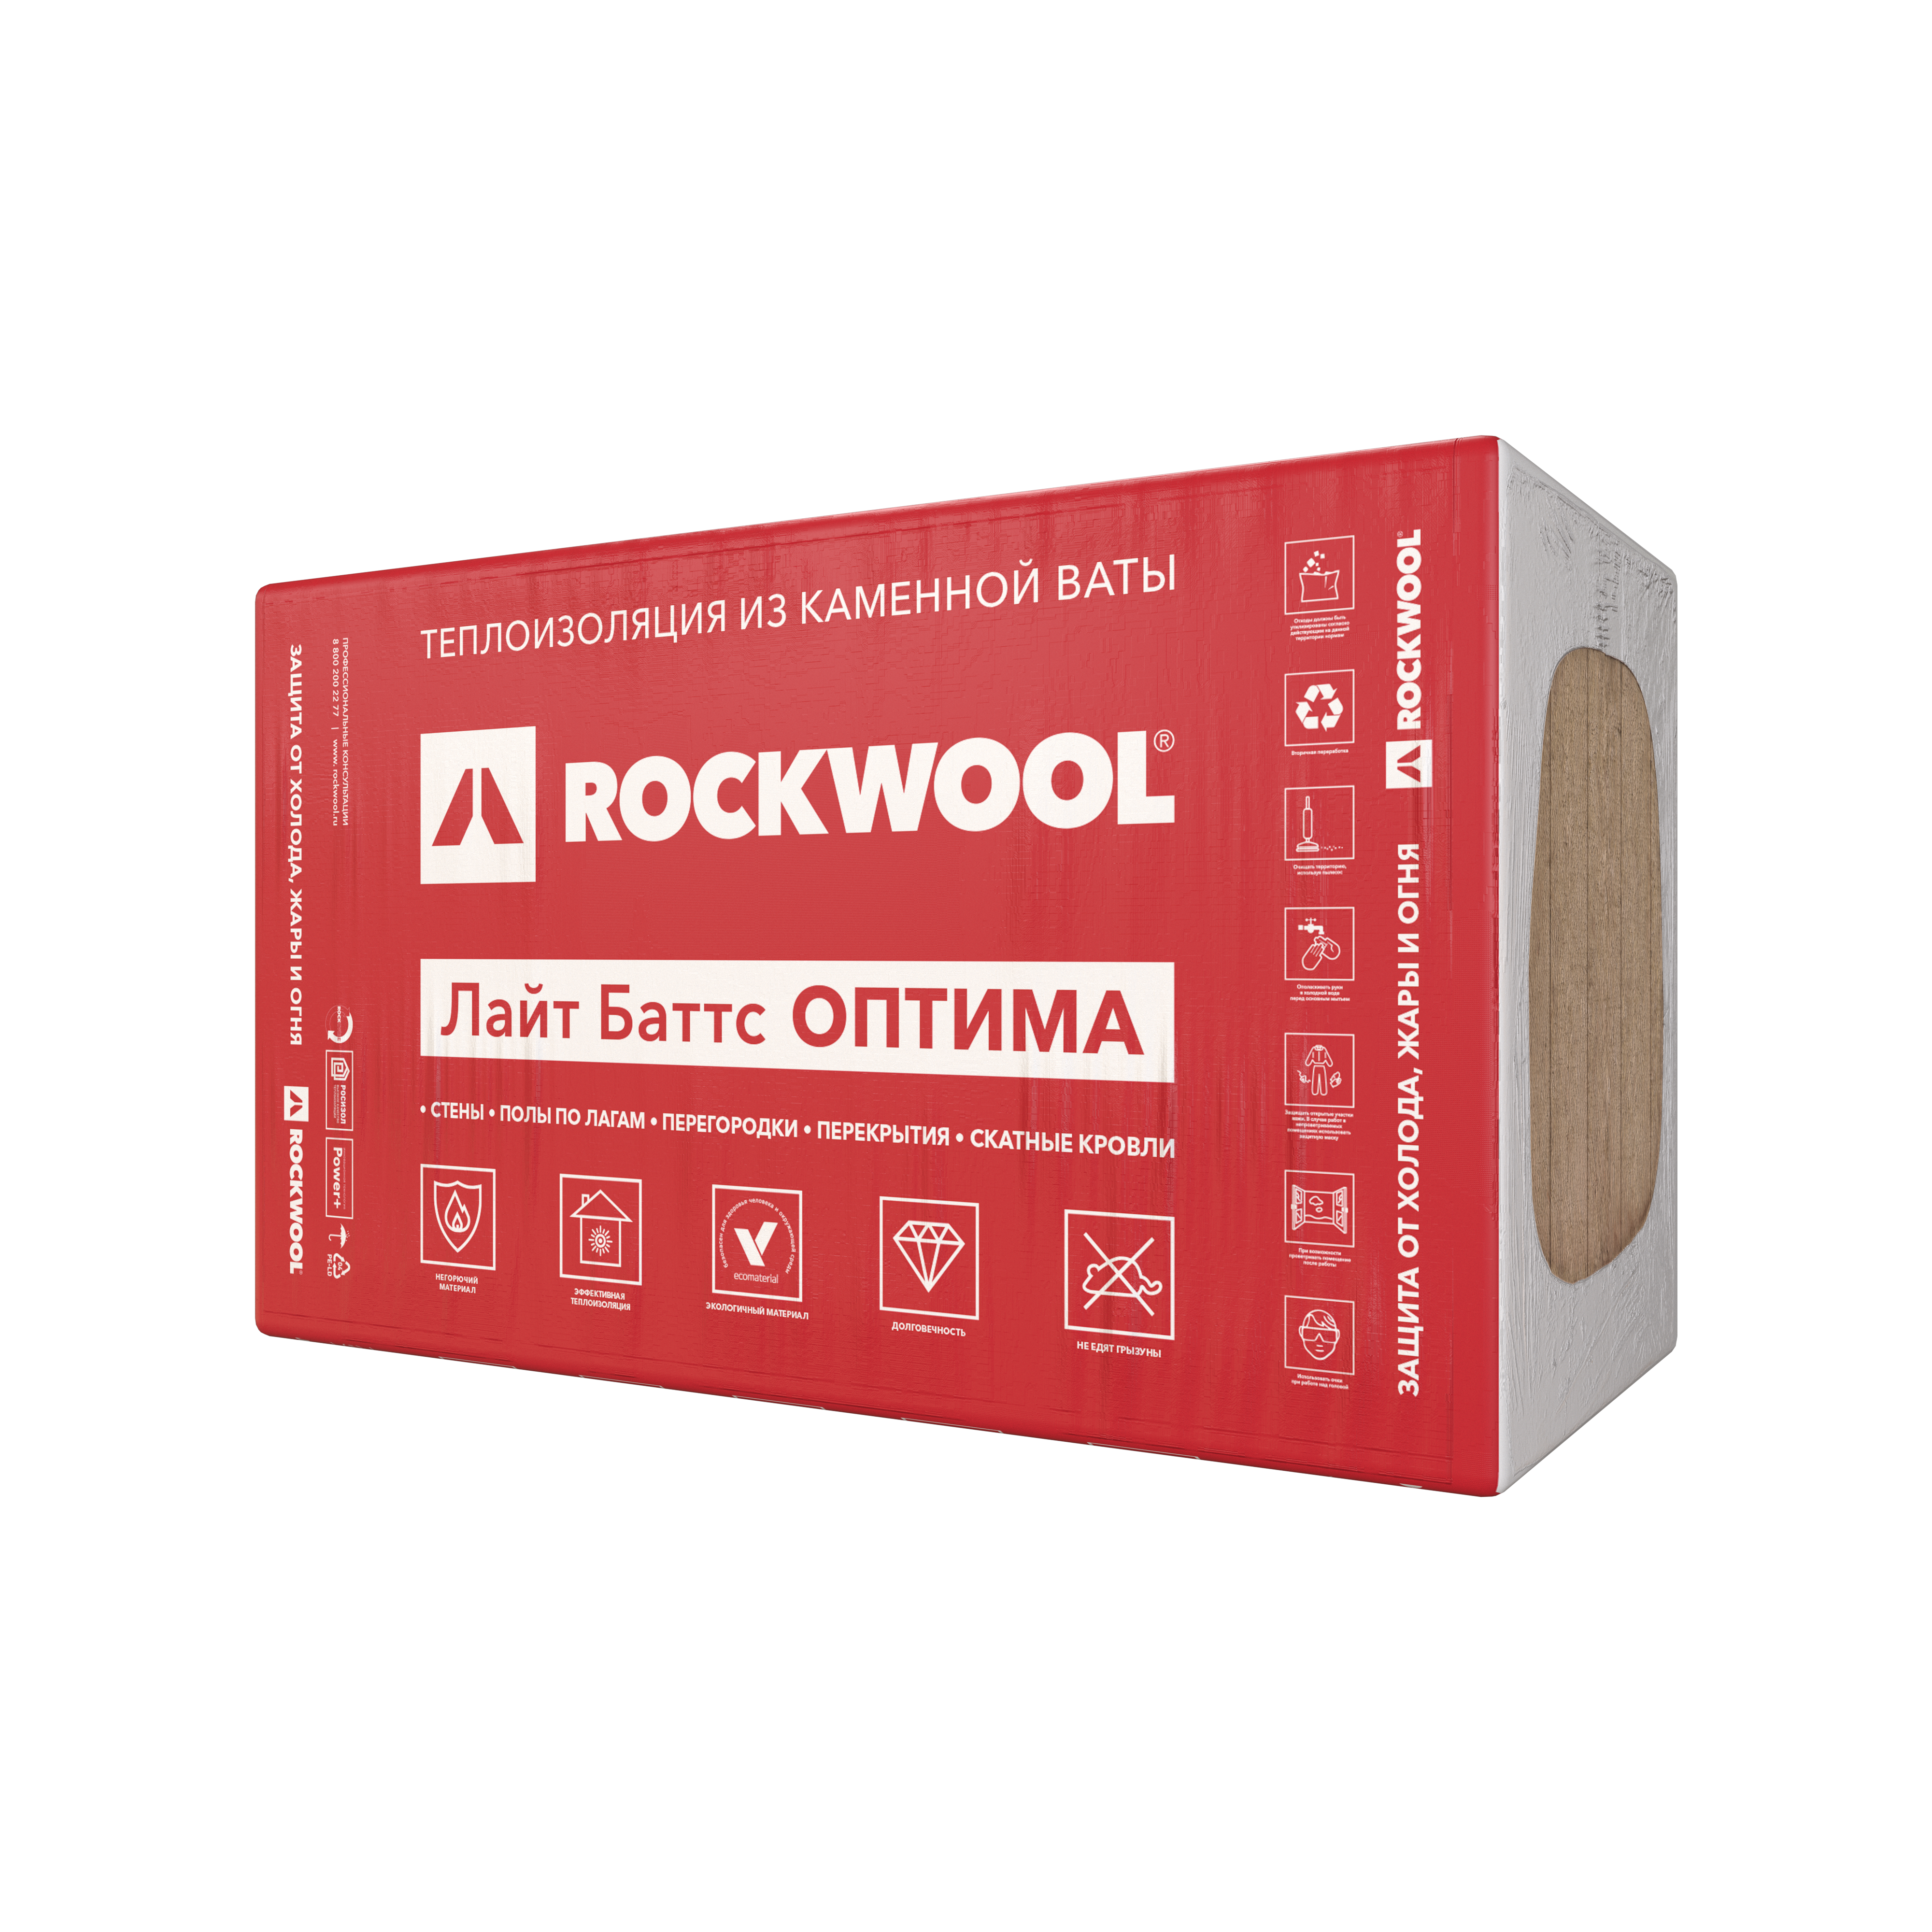 Rockwool «Руф Баттс»: технические характеристики и плотность утеплителя, минераловатные плиты «Н» и «Д Экстра» - отзывы и цены на сайте